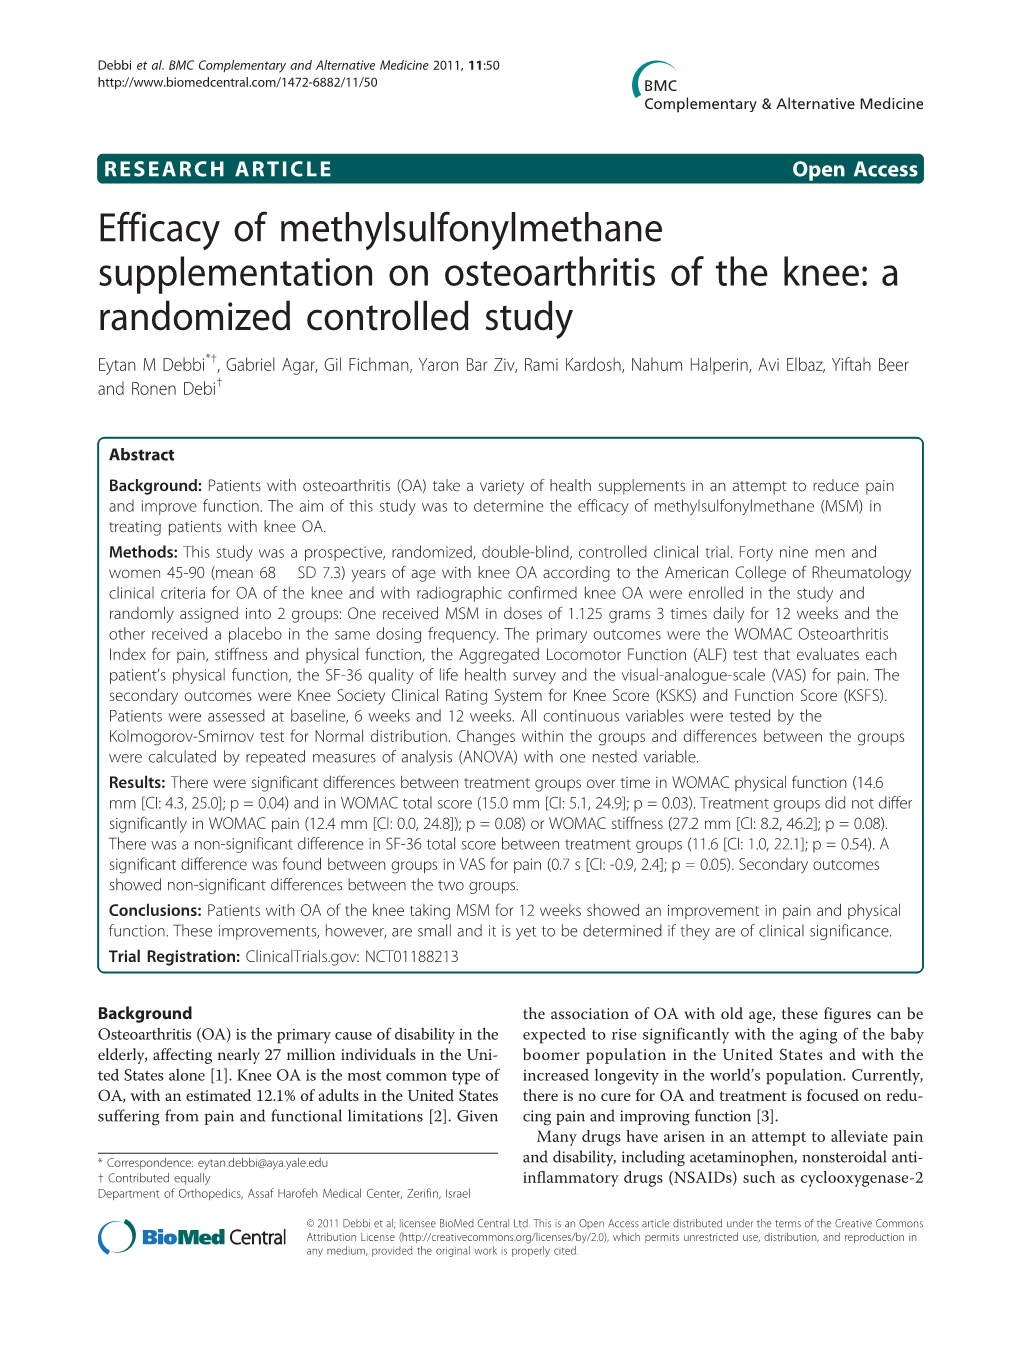 Efficacy of Methylsulfonylmethane Supplementation on Osteoarthritis Of